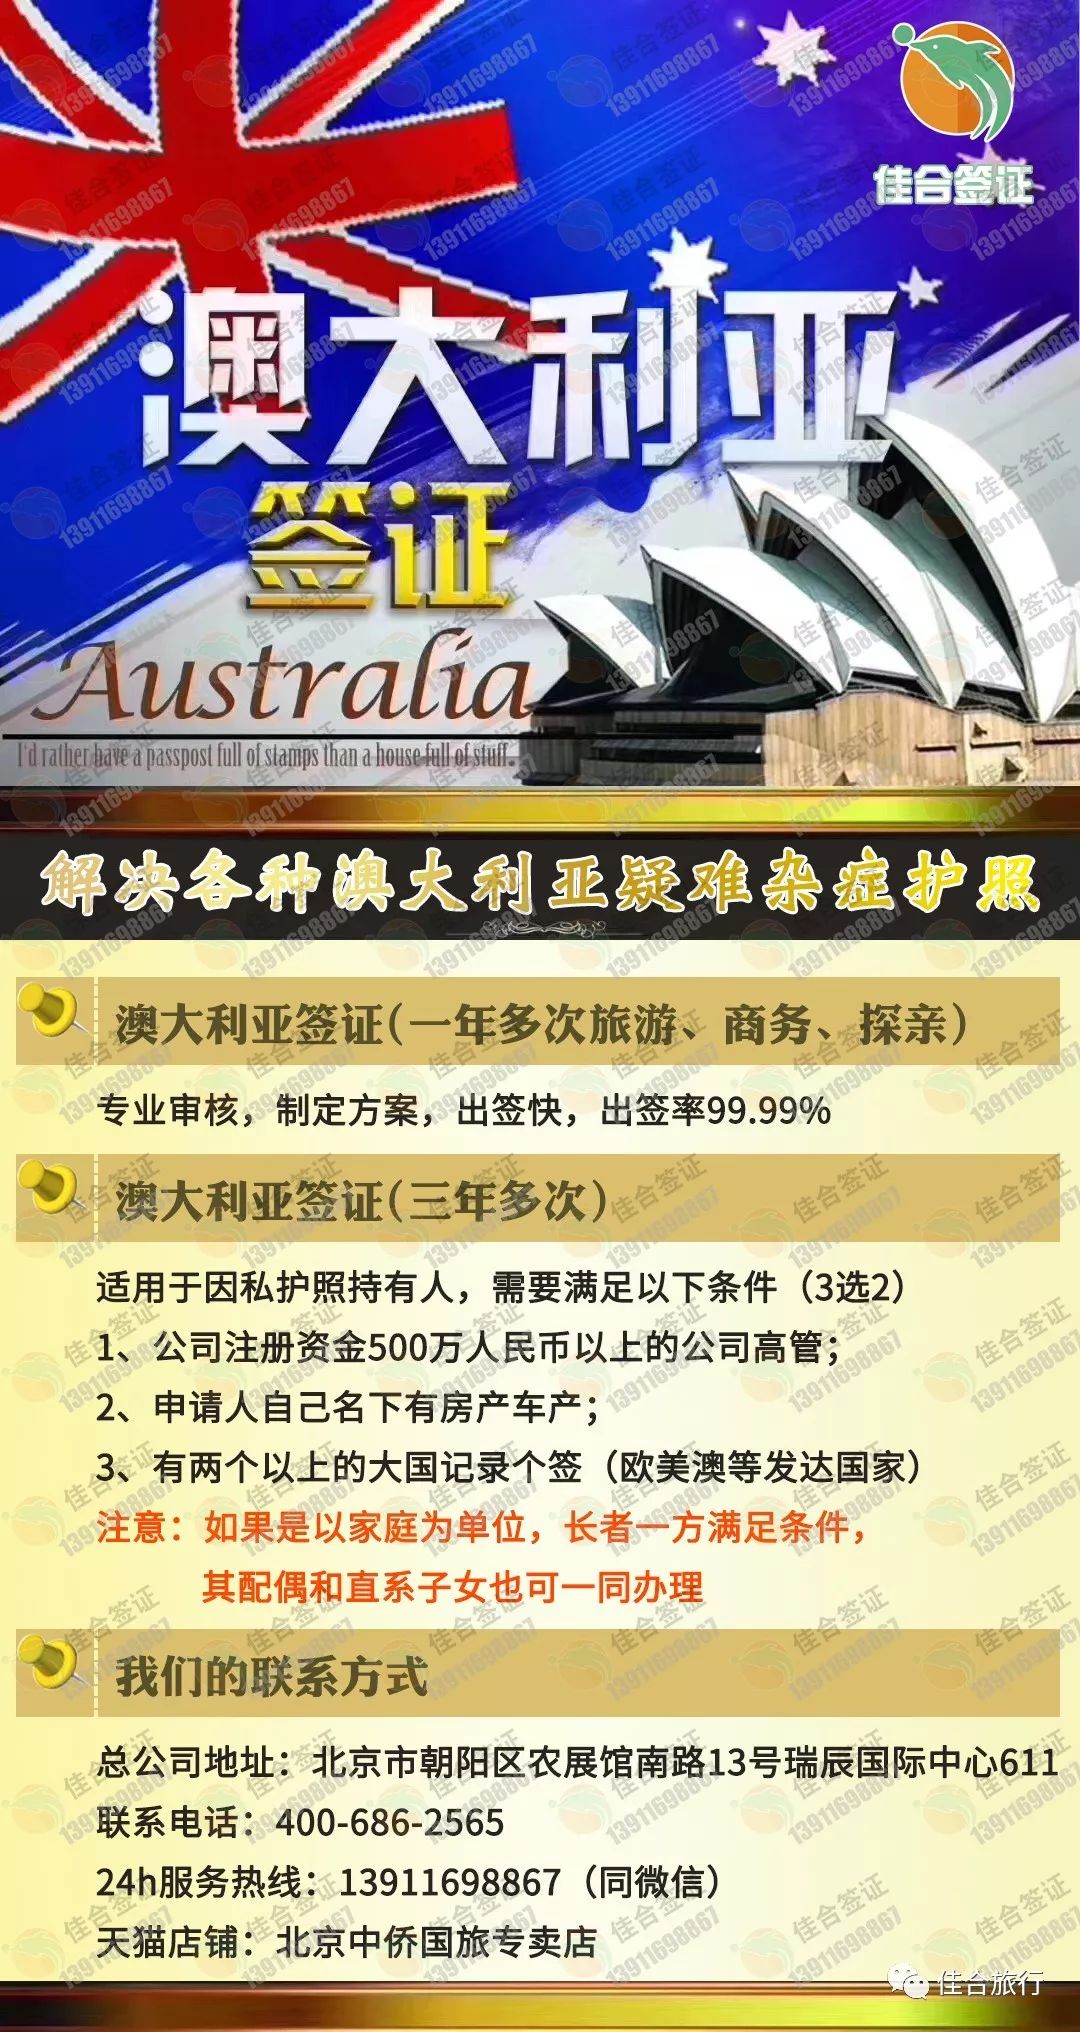 全方位解析澳大利亚旅游签证(办签攻略及注意